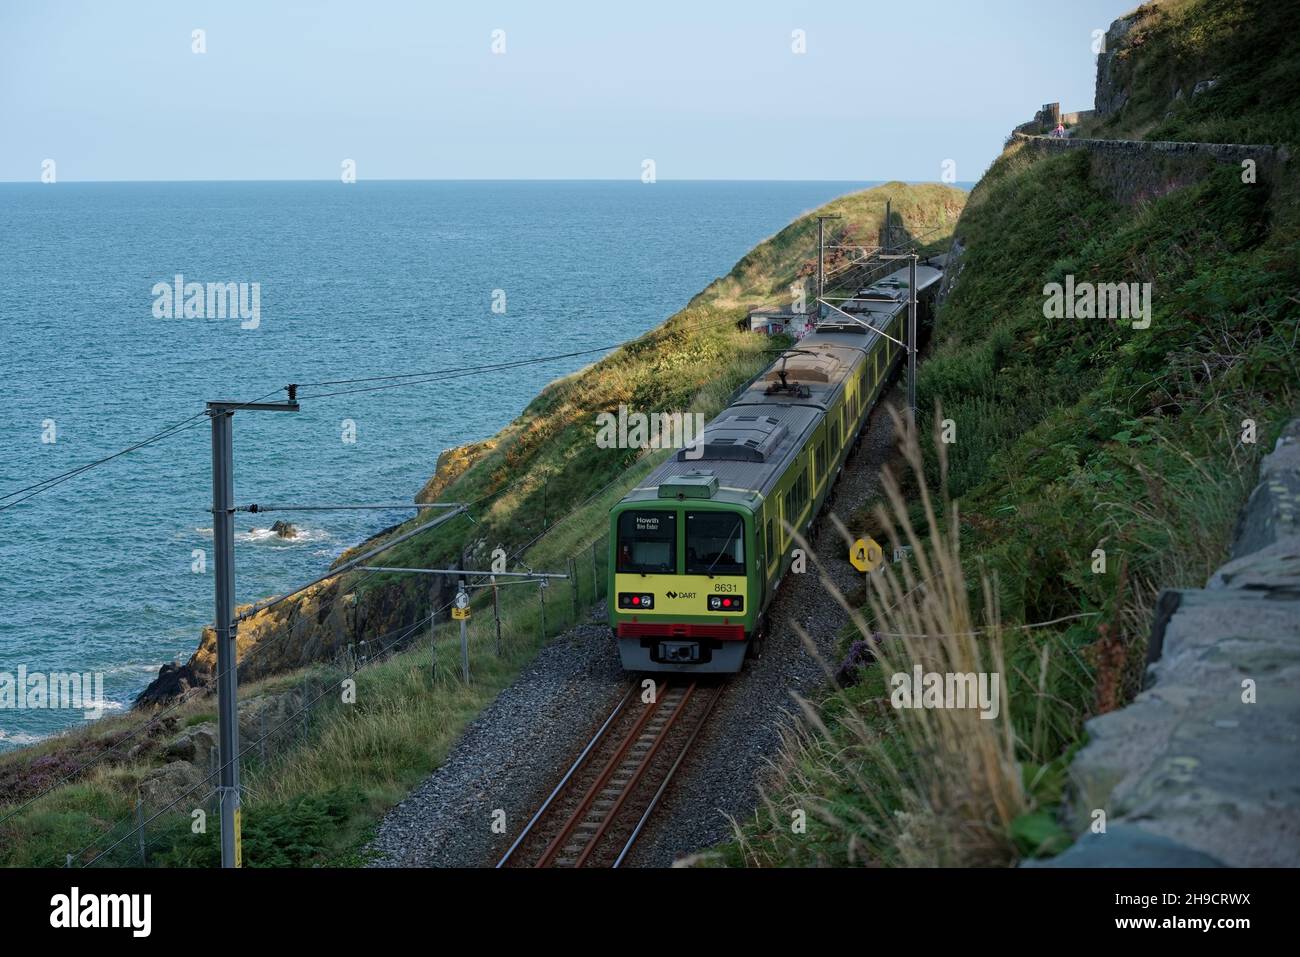 BRAY, IRLANDA - 27 agosto 2021: Treno elettrico DART (Dublin Area Rapid Transit) sulla linea ferroviaria costiera di Bray Head vista da Bray alla scogliera di Graystones Foto Stock